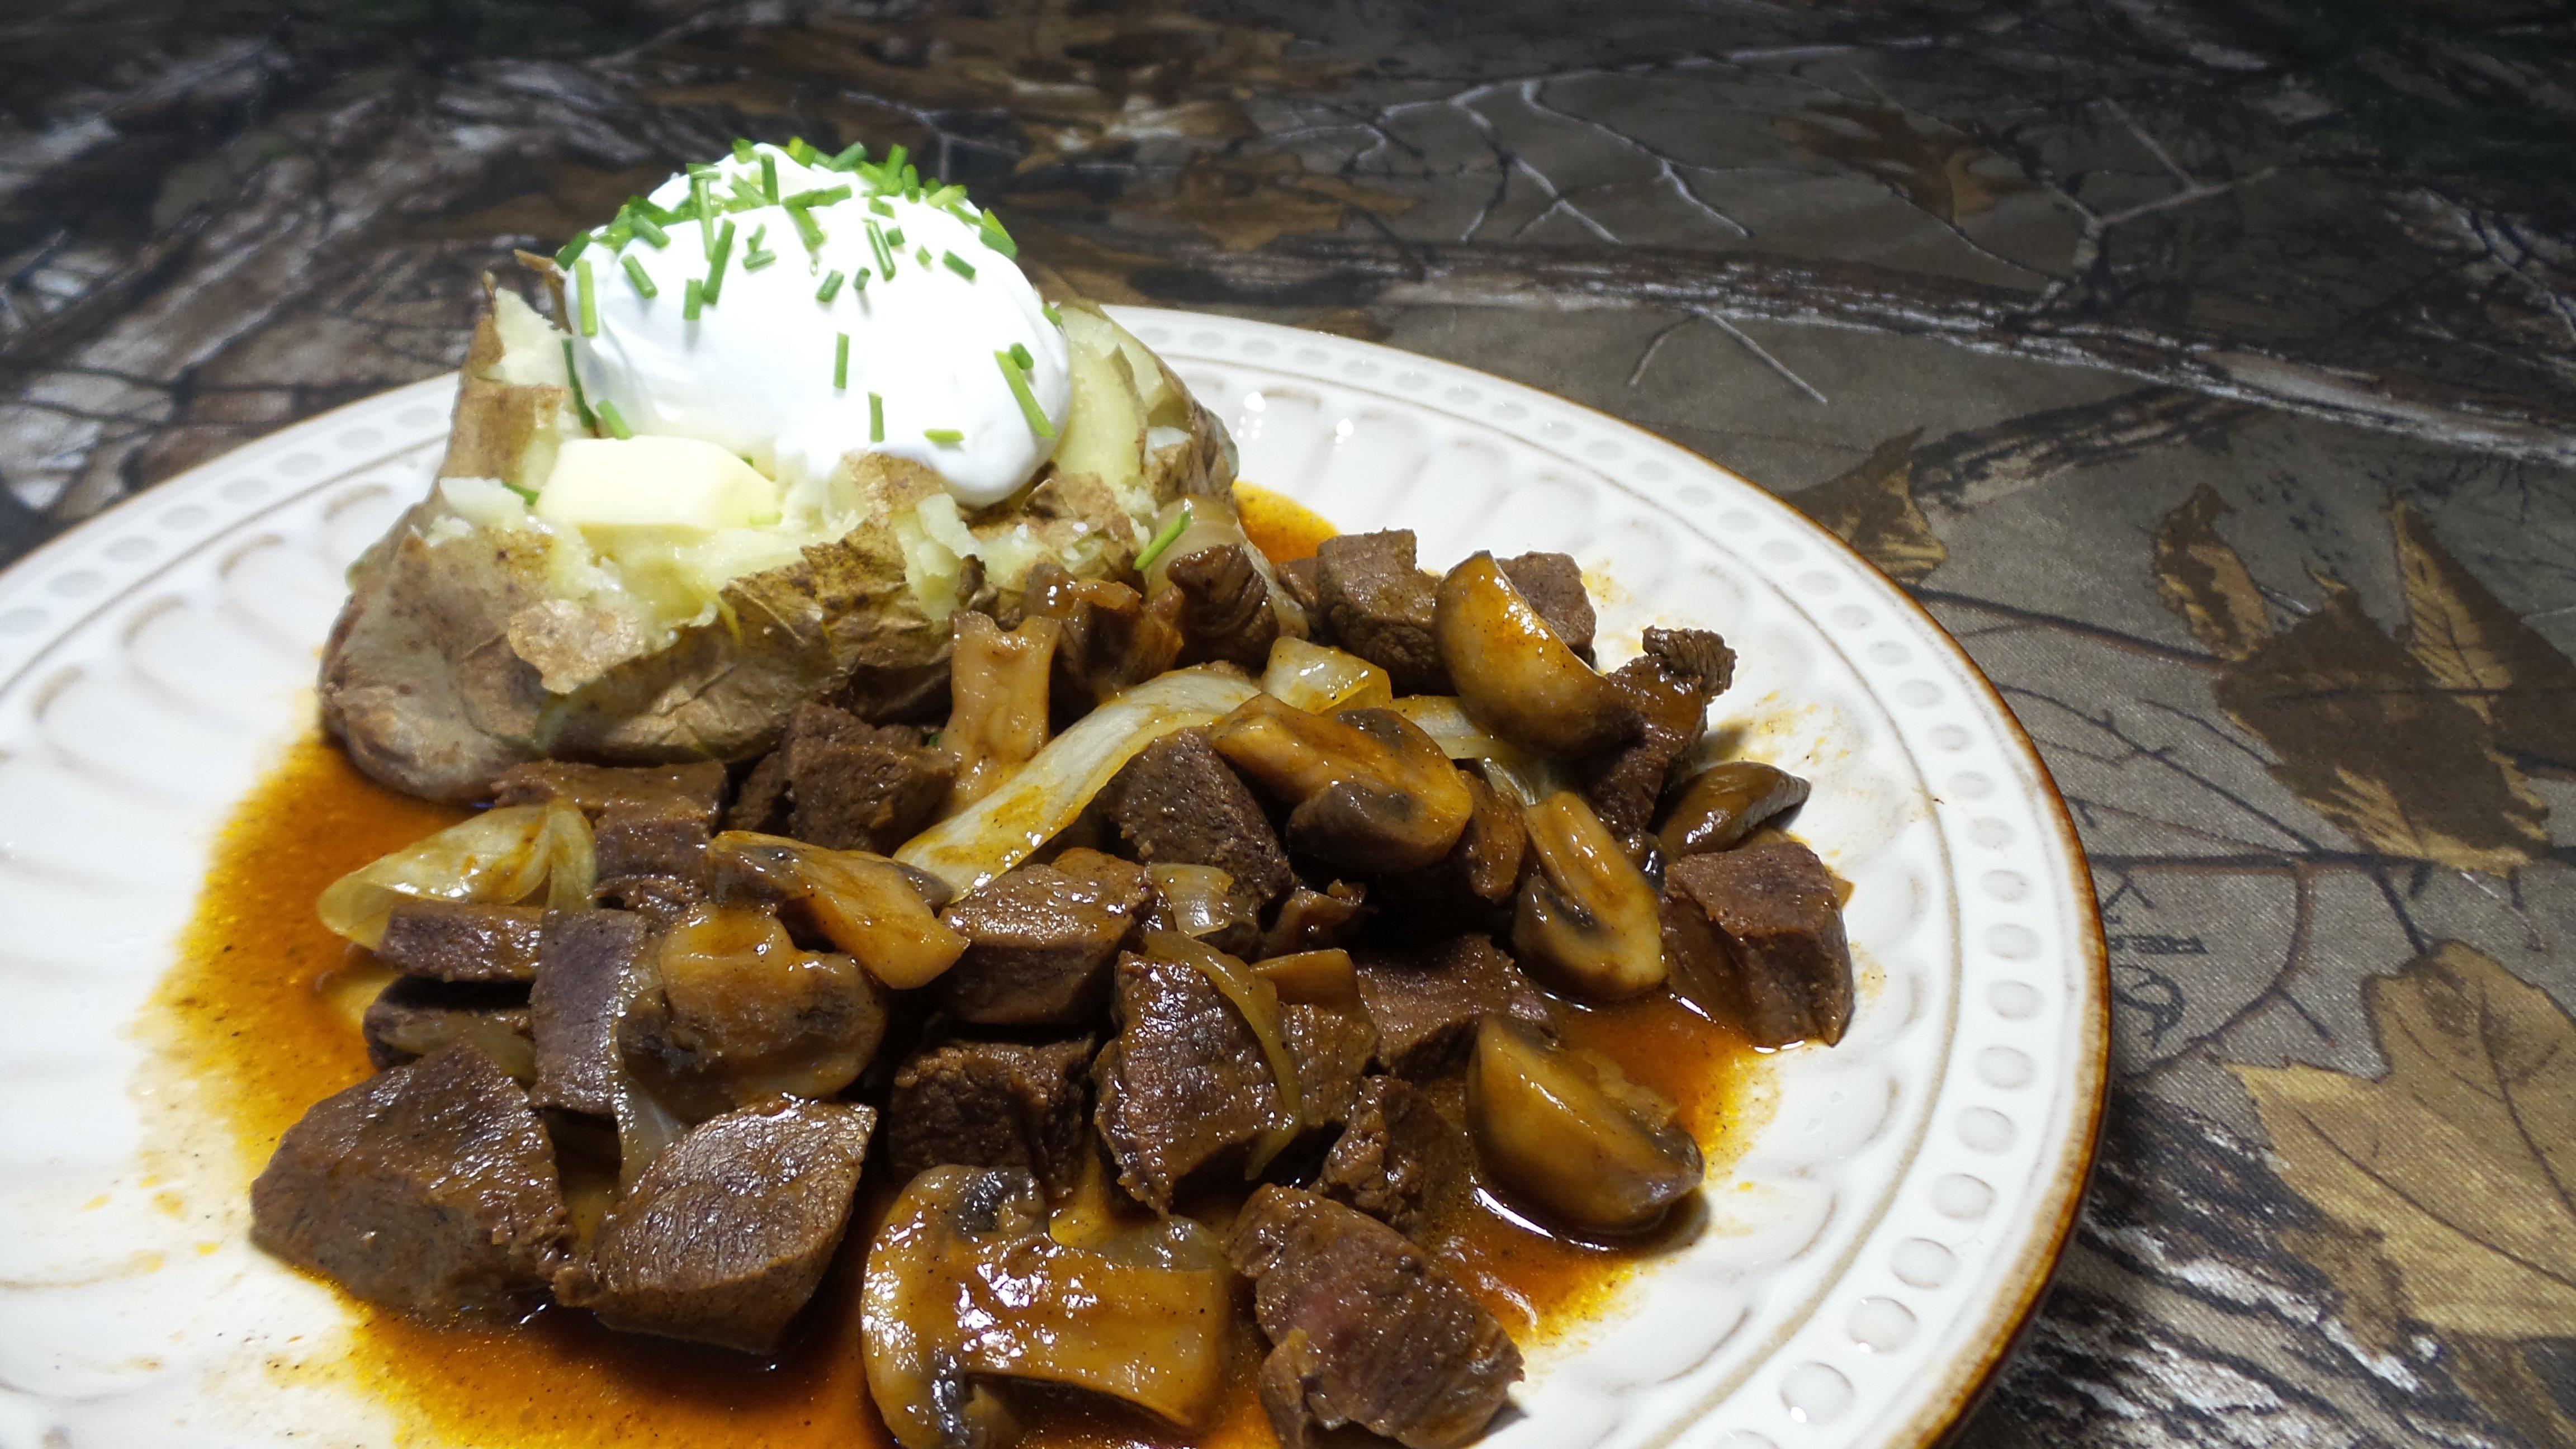 Serve the venison tips alongside potatoes or over egg noodles.